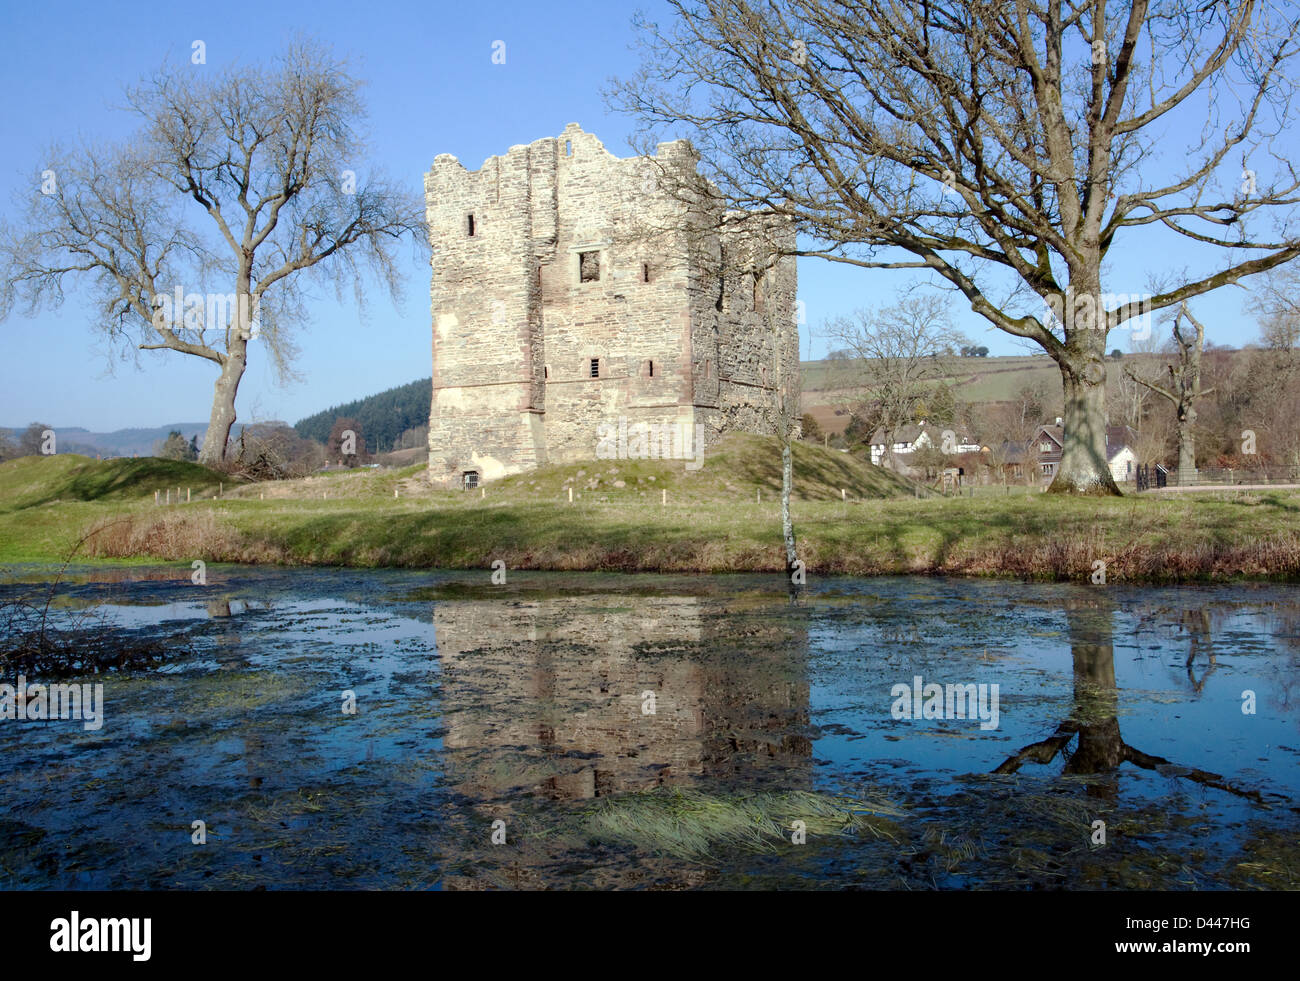 Le château récemment restauré Hopton dans Shropshire près de Ludlow Craven Arms et château des évêques Banque D'Images